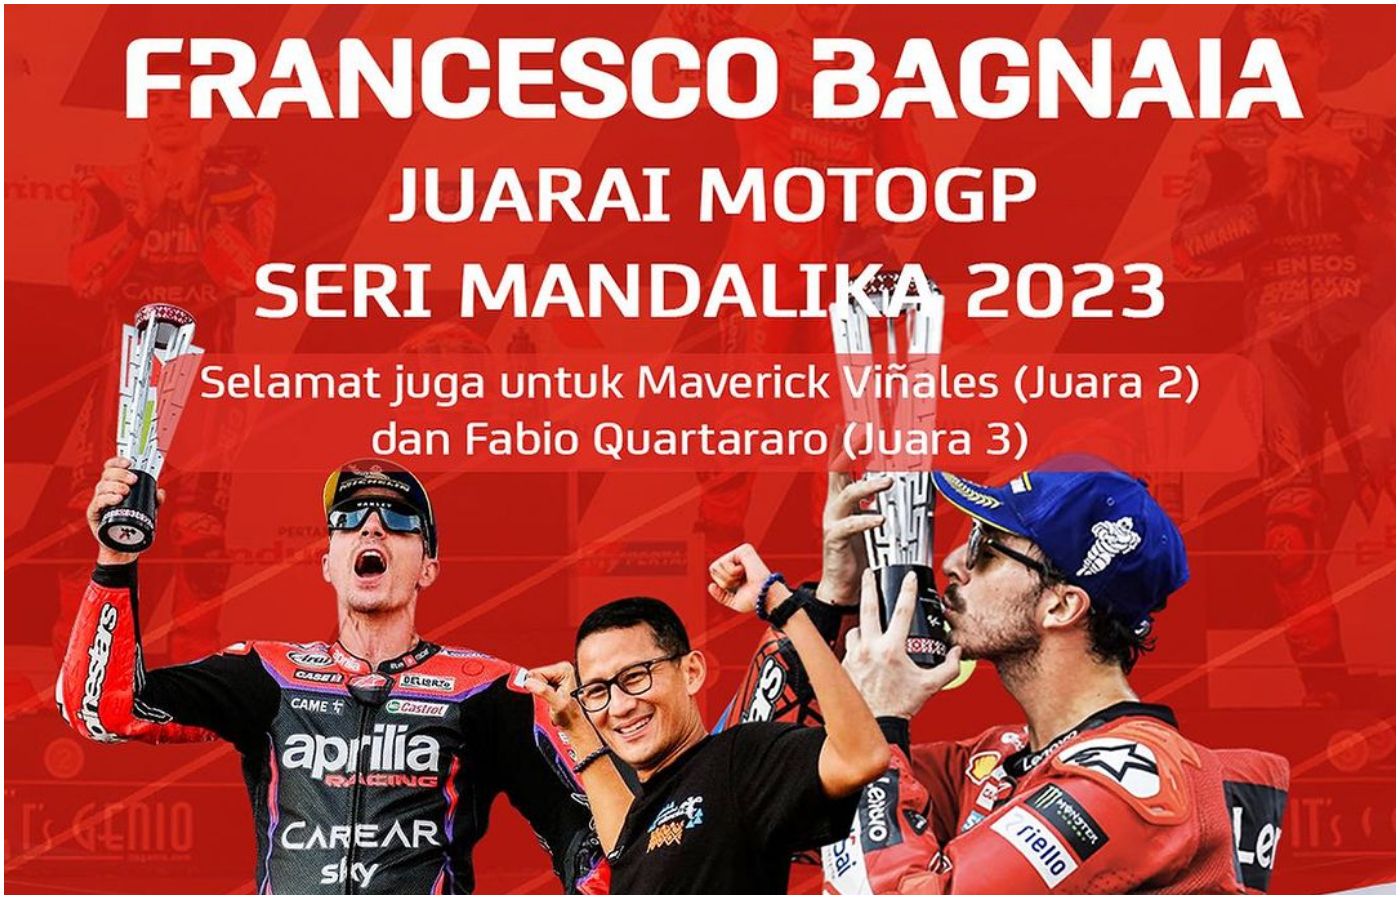 Francesco Bagnaia menjuarai MotoGP Indonesia 2023 di Mandalika